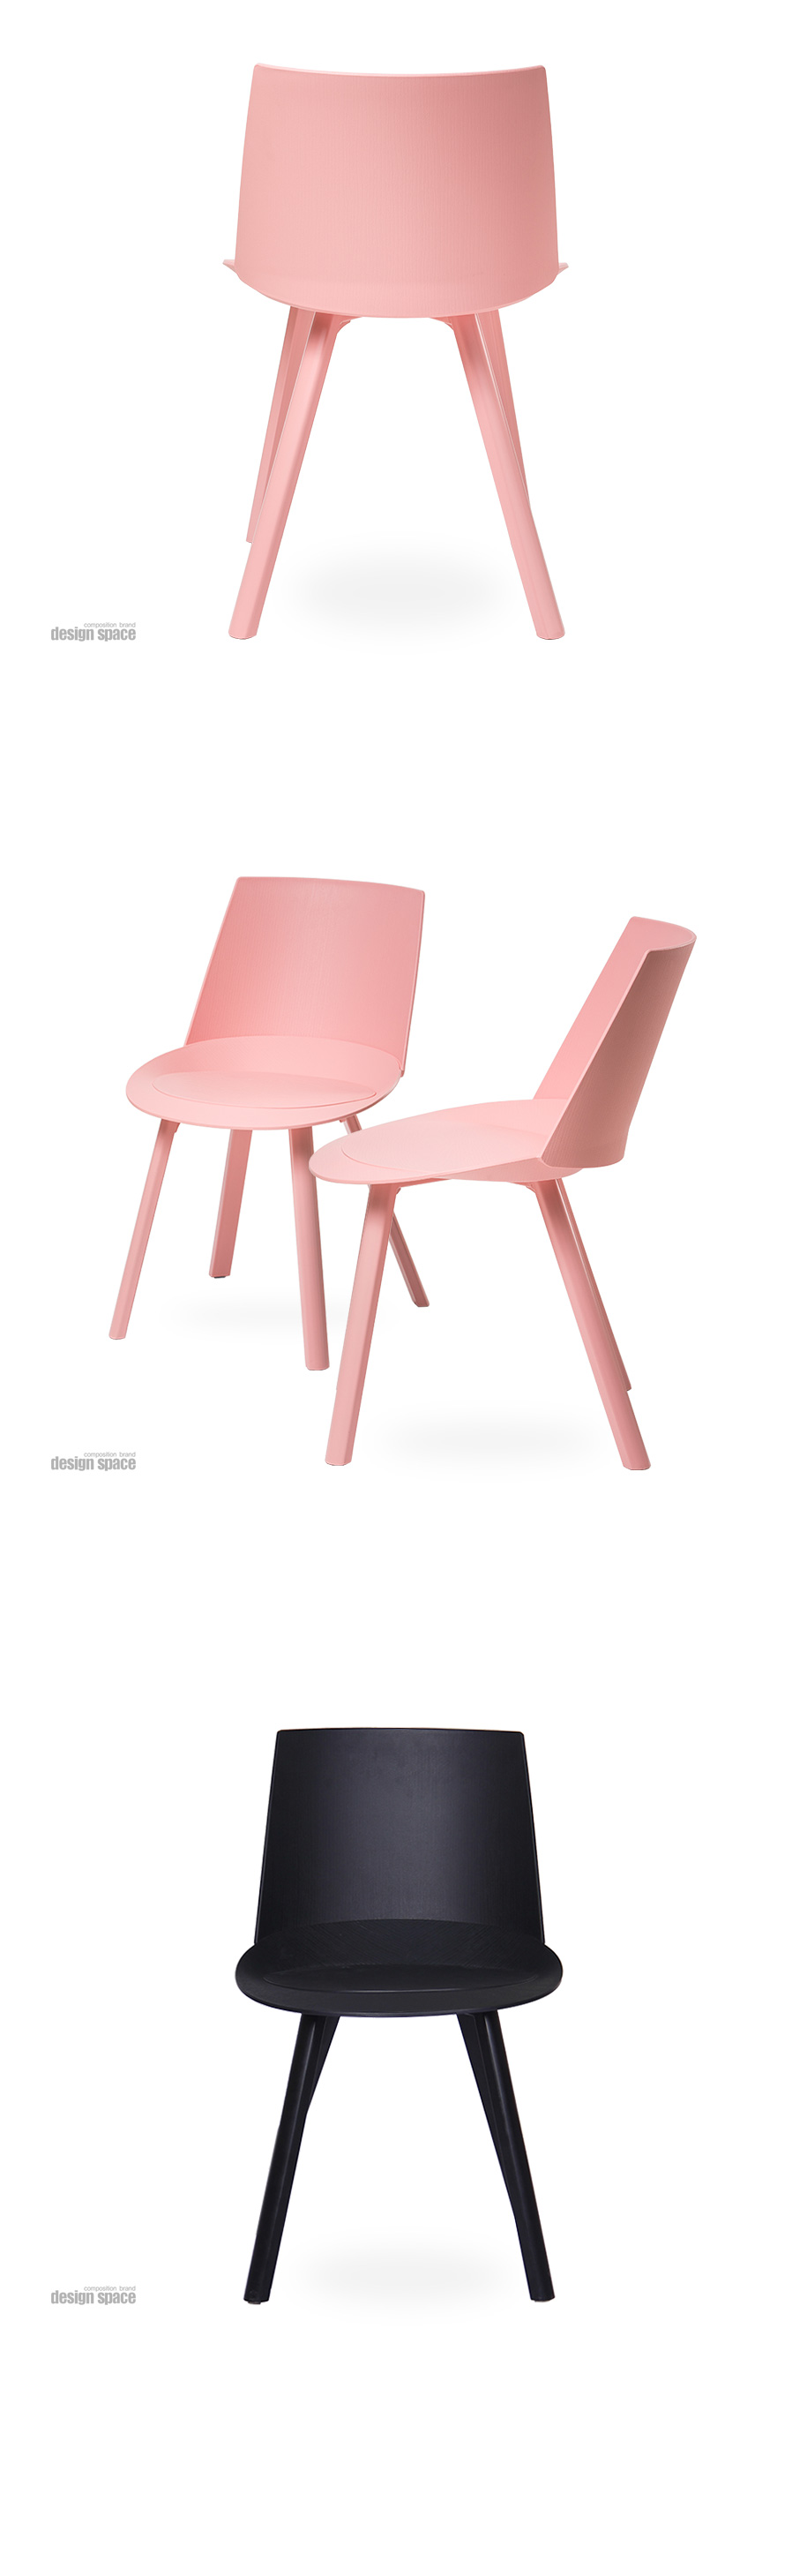 chouer-chair(슈에르-체어)_03.jpg